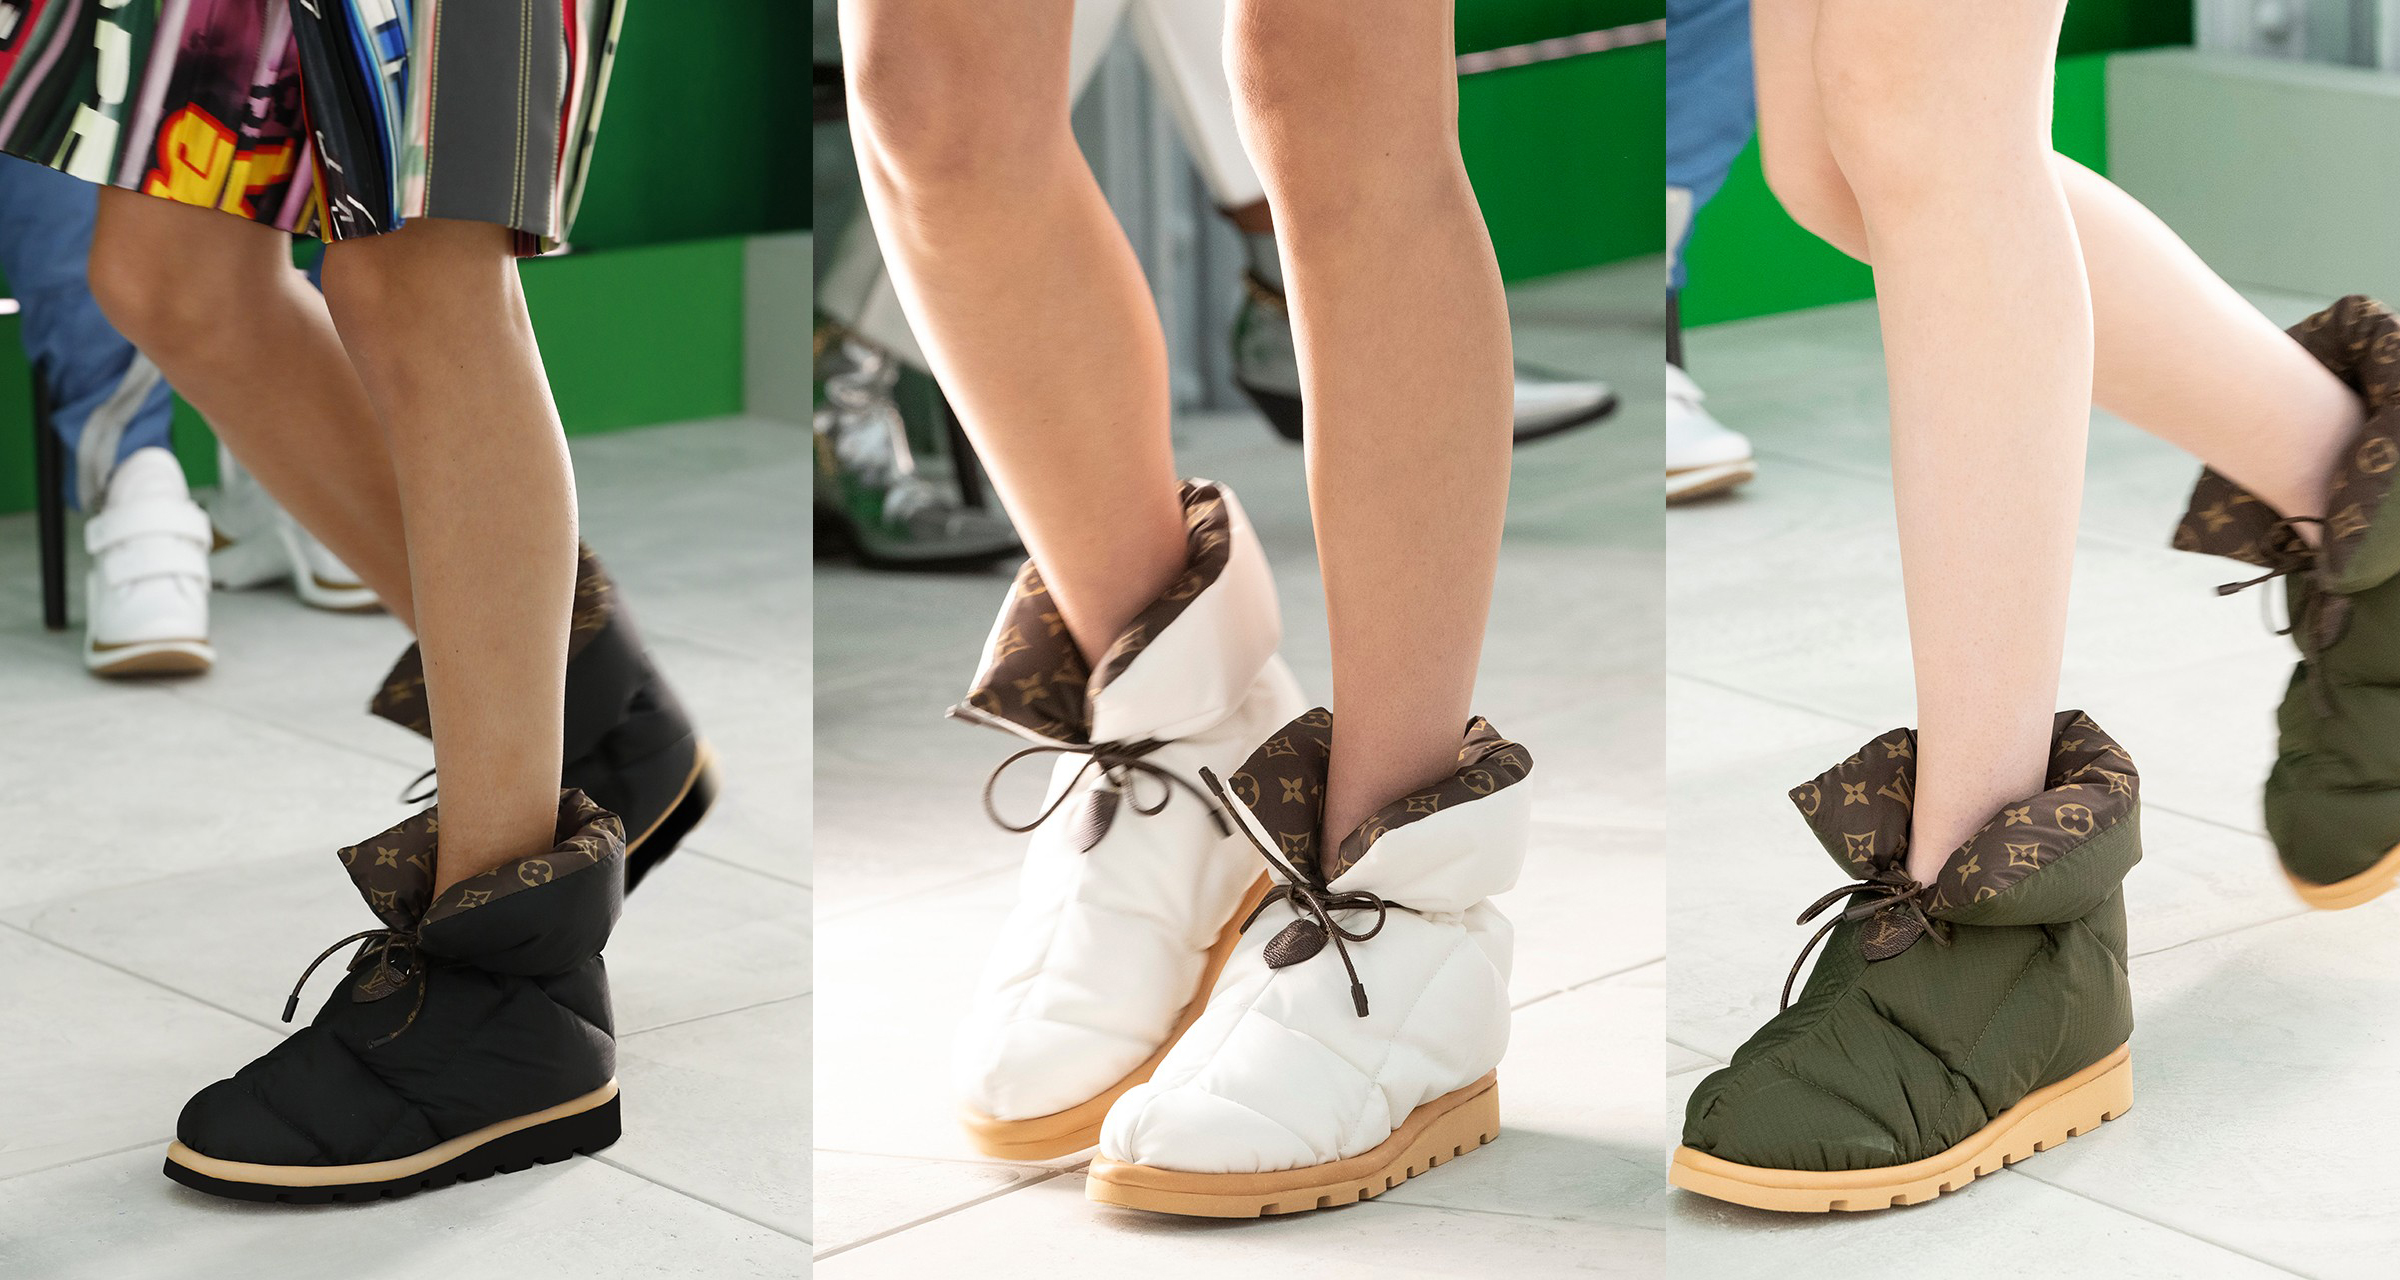 Louis Vuitton, Shoes, Monogram Lv Boots